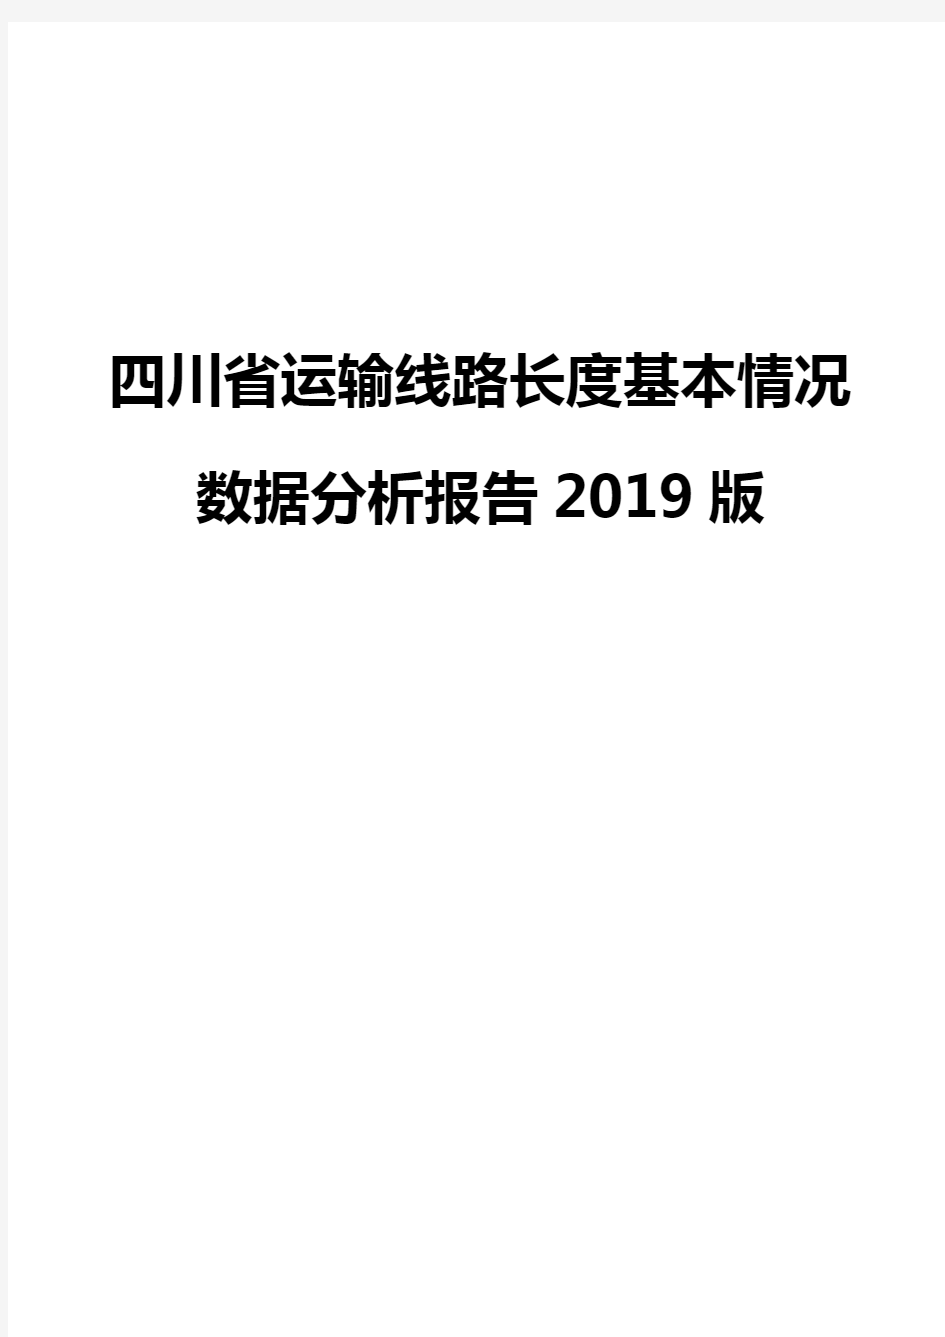 四川省运输线路长度基本情况数据分析报告2019版